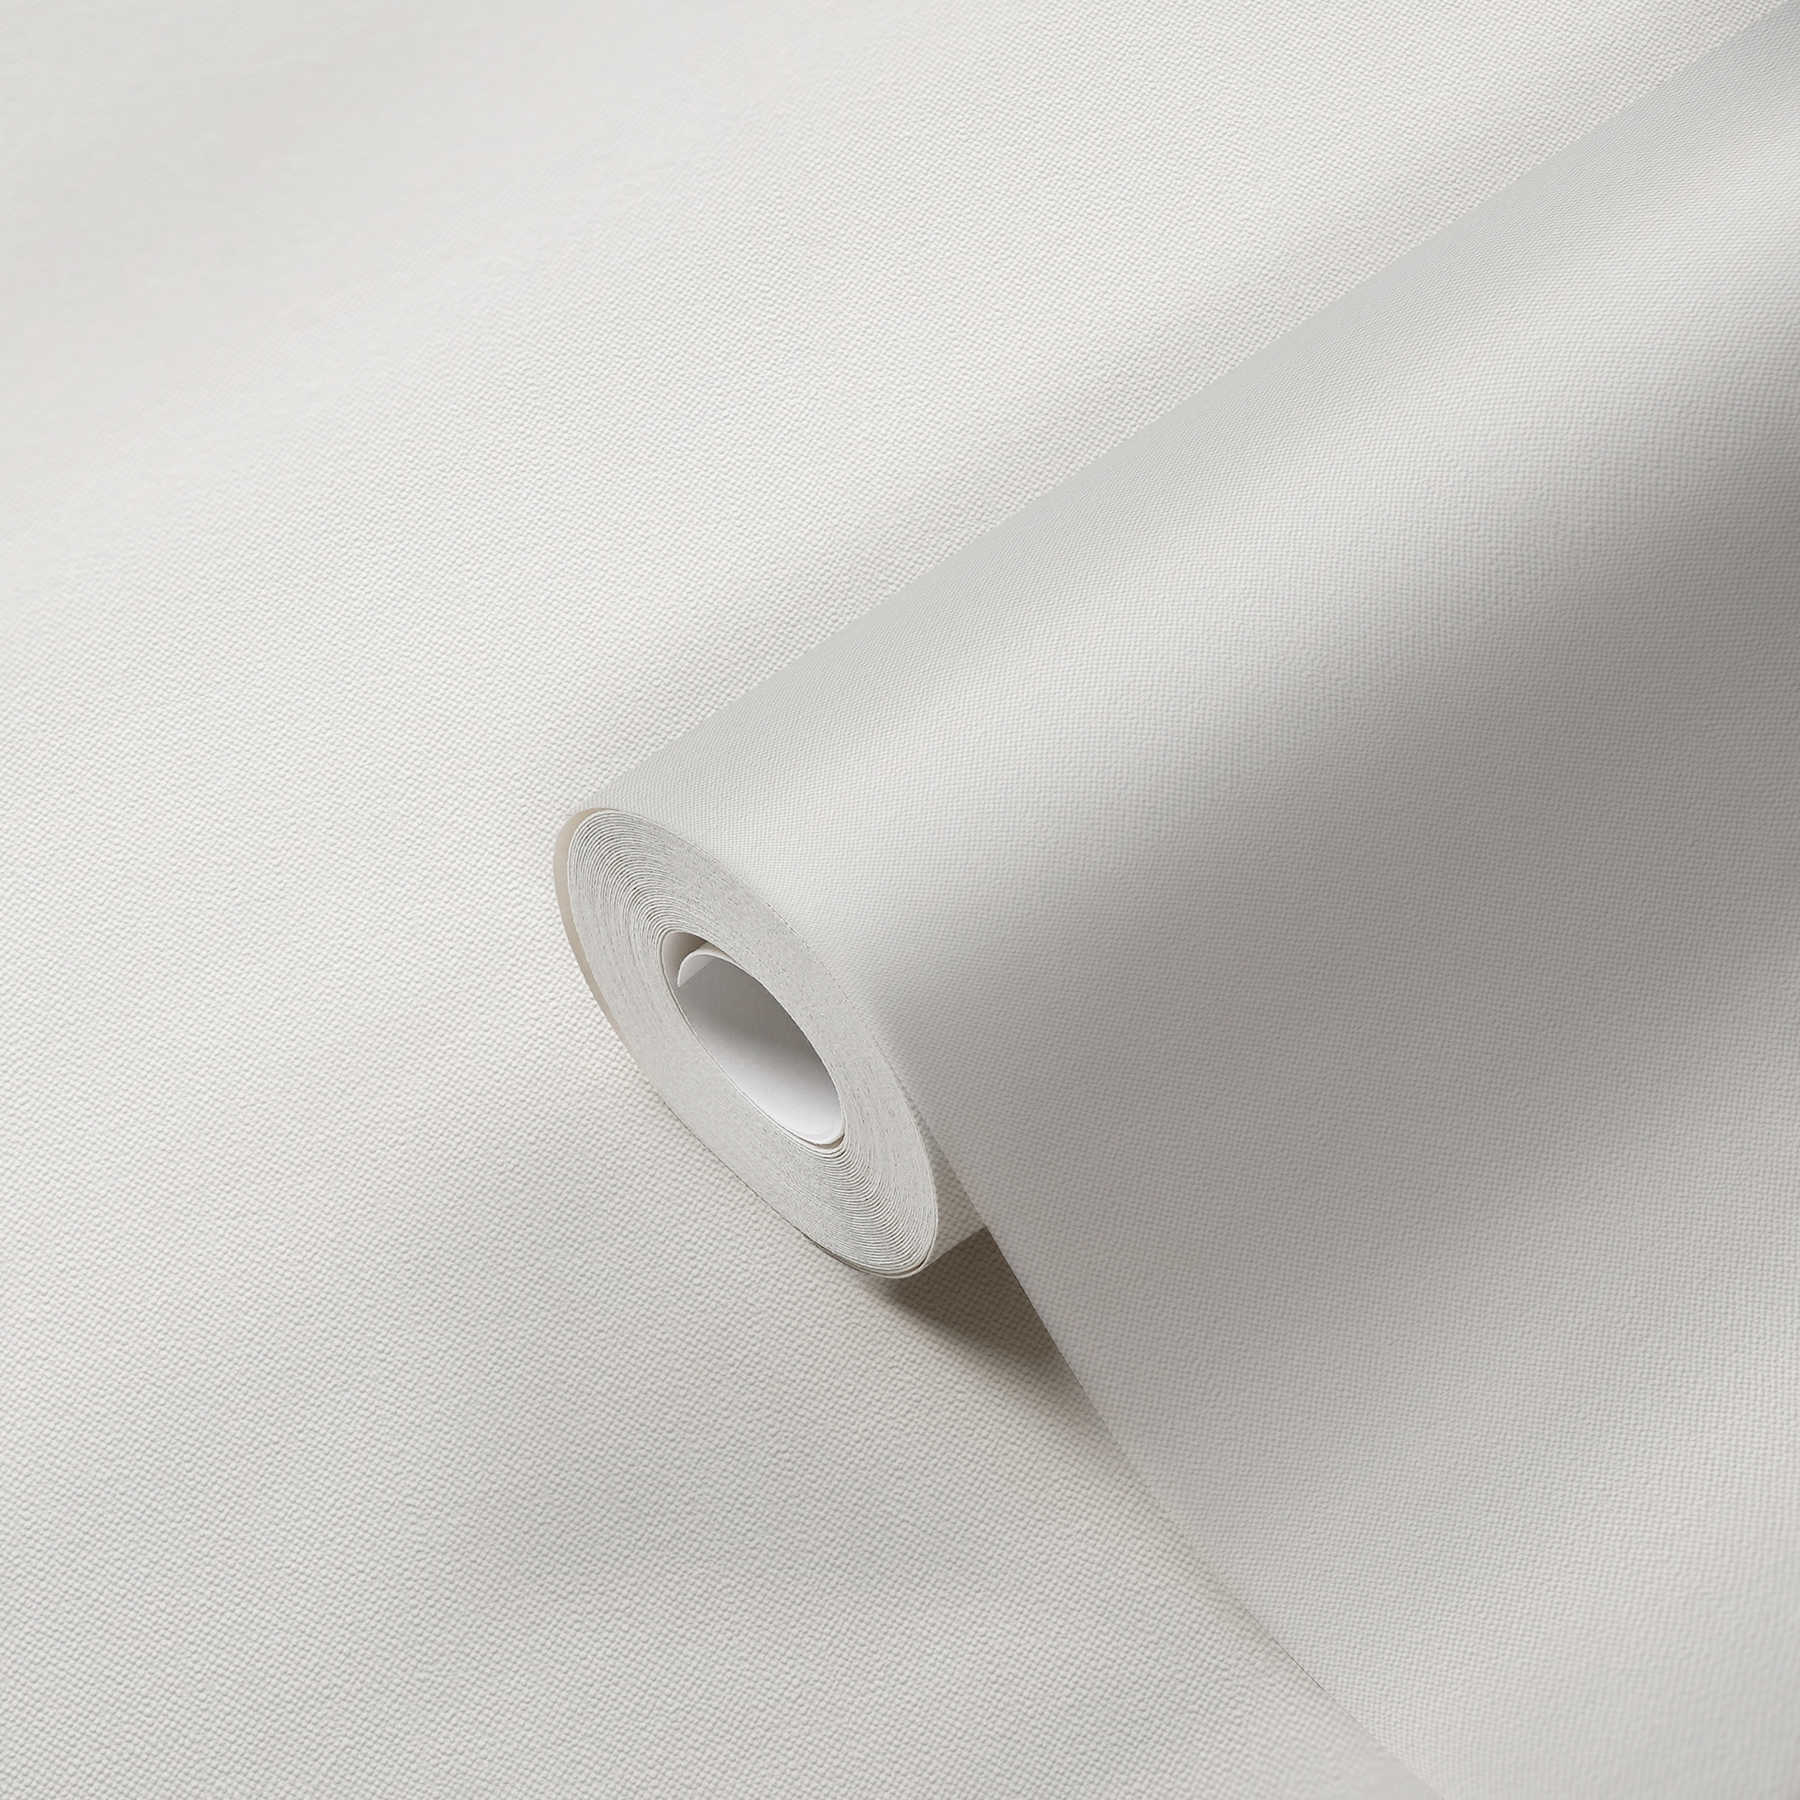             Leinenoptik Tapete Weiß einfarbig mit Strukturdesign
        